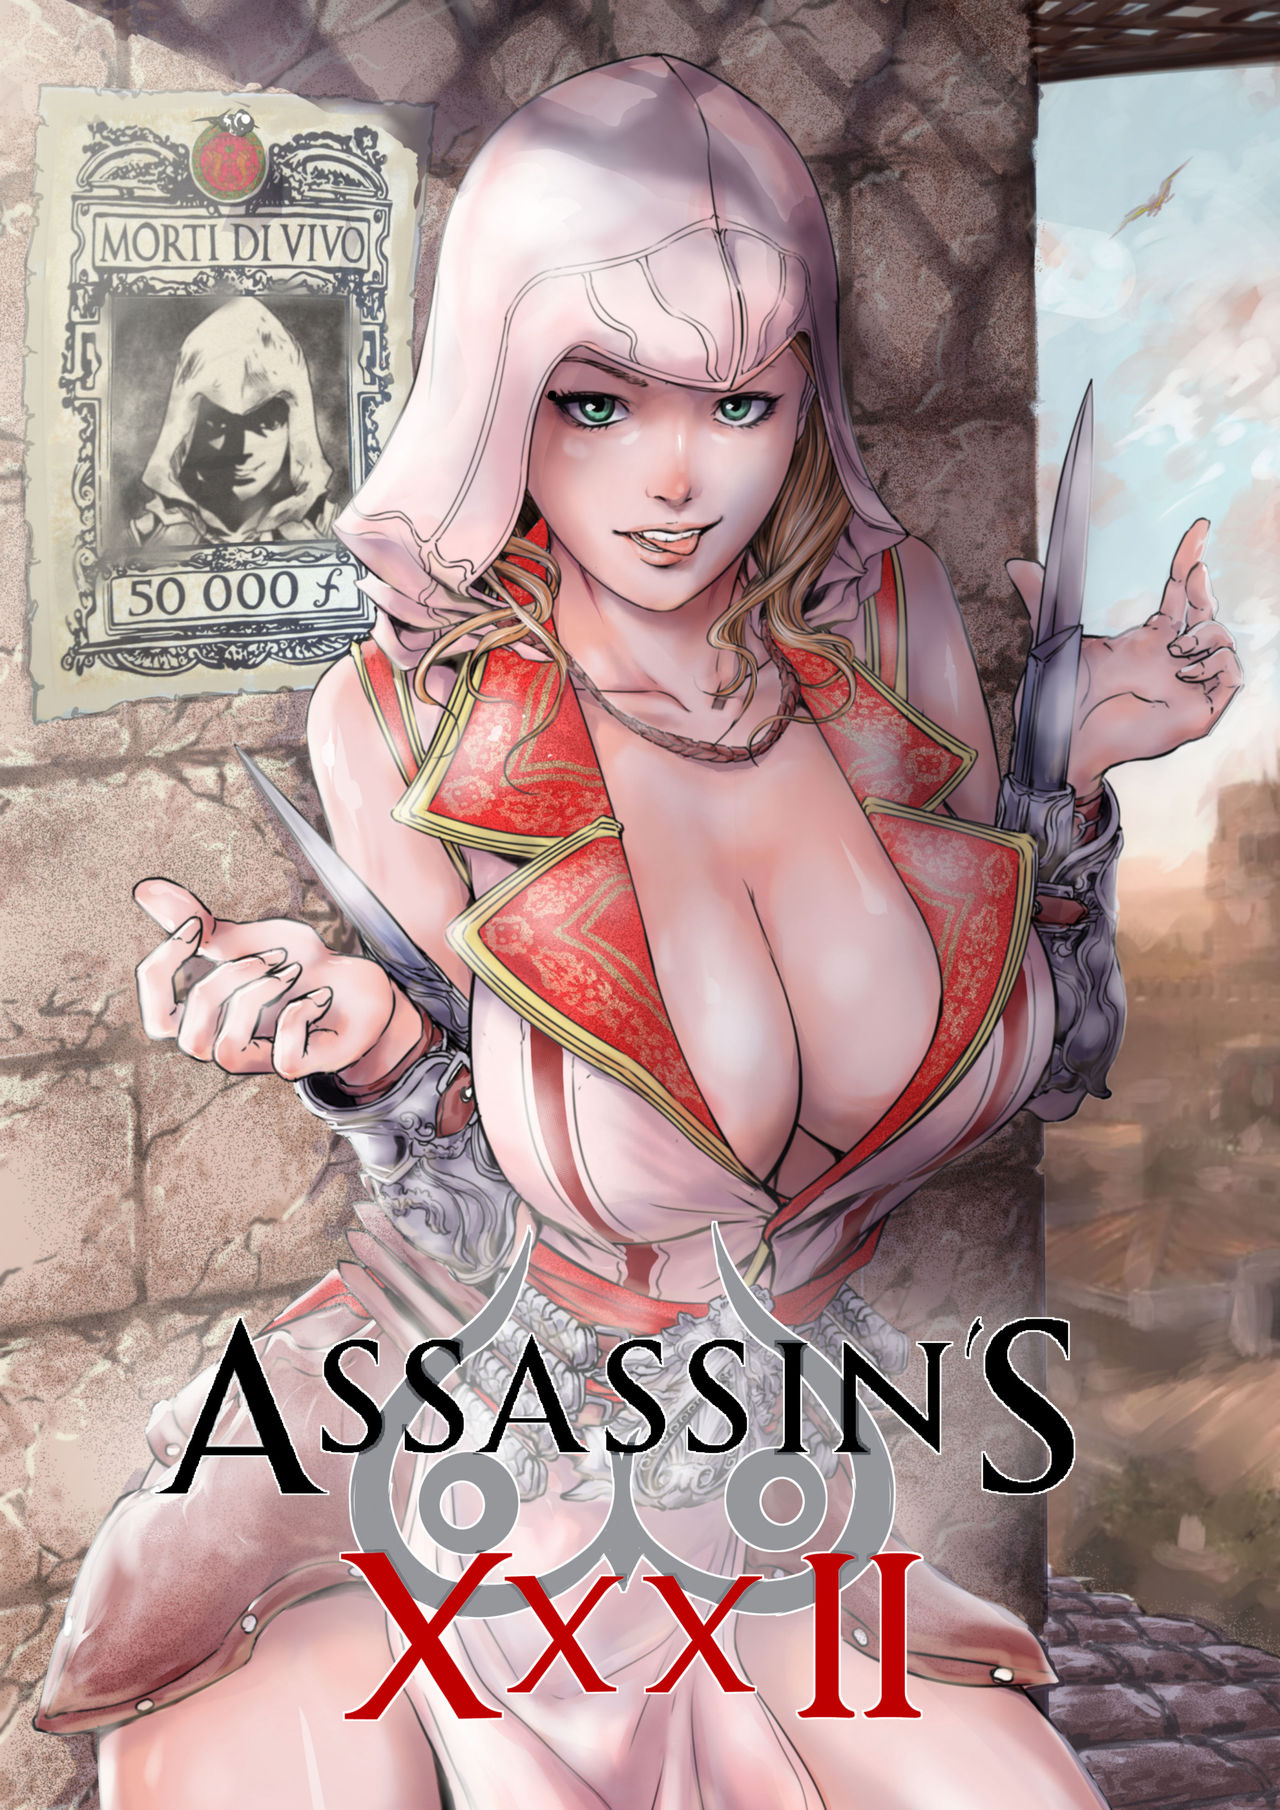 1280px x 1810px - Assassin's XXX II byTorn-S - Porn Cartoon Comics